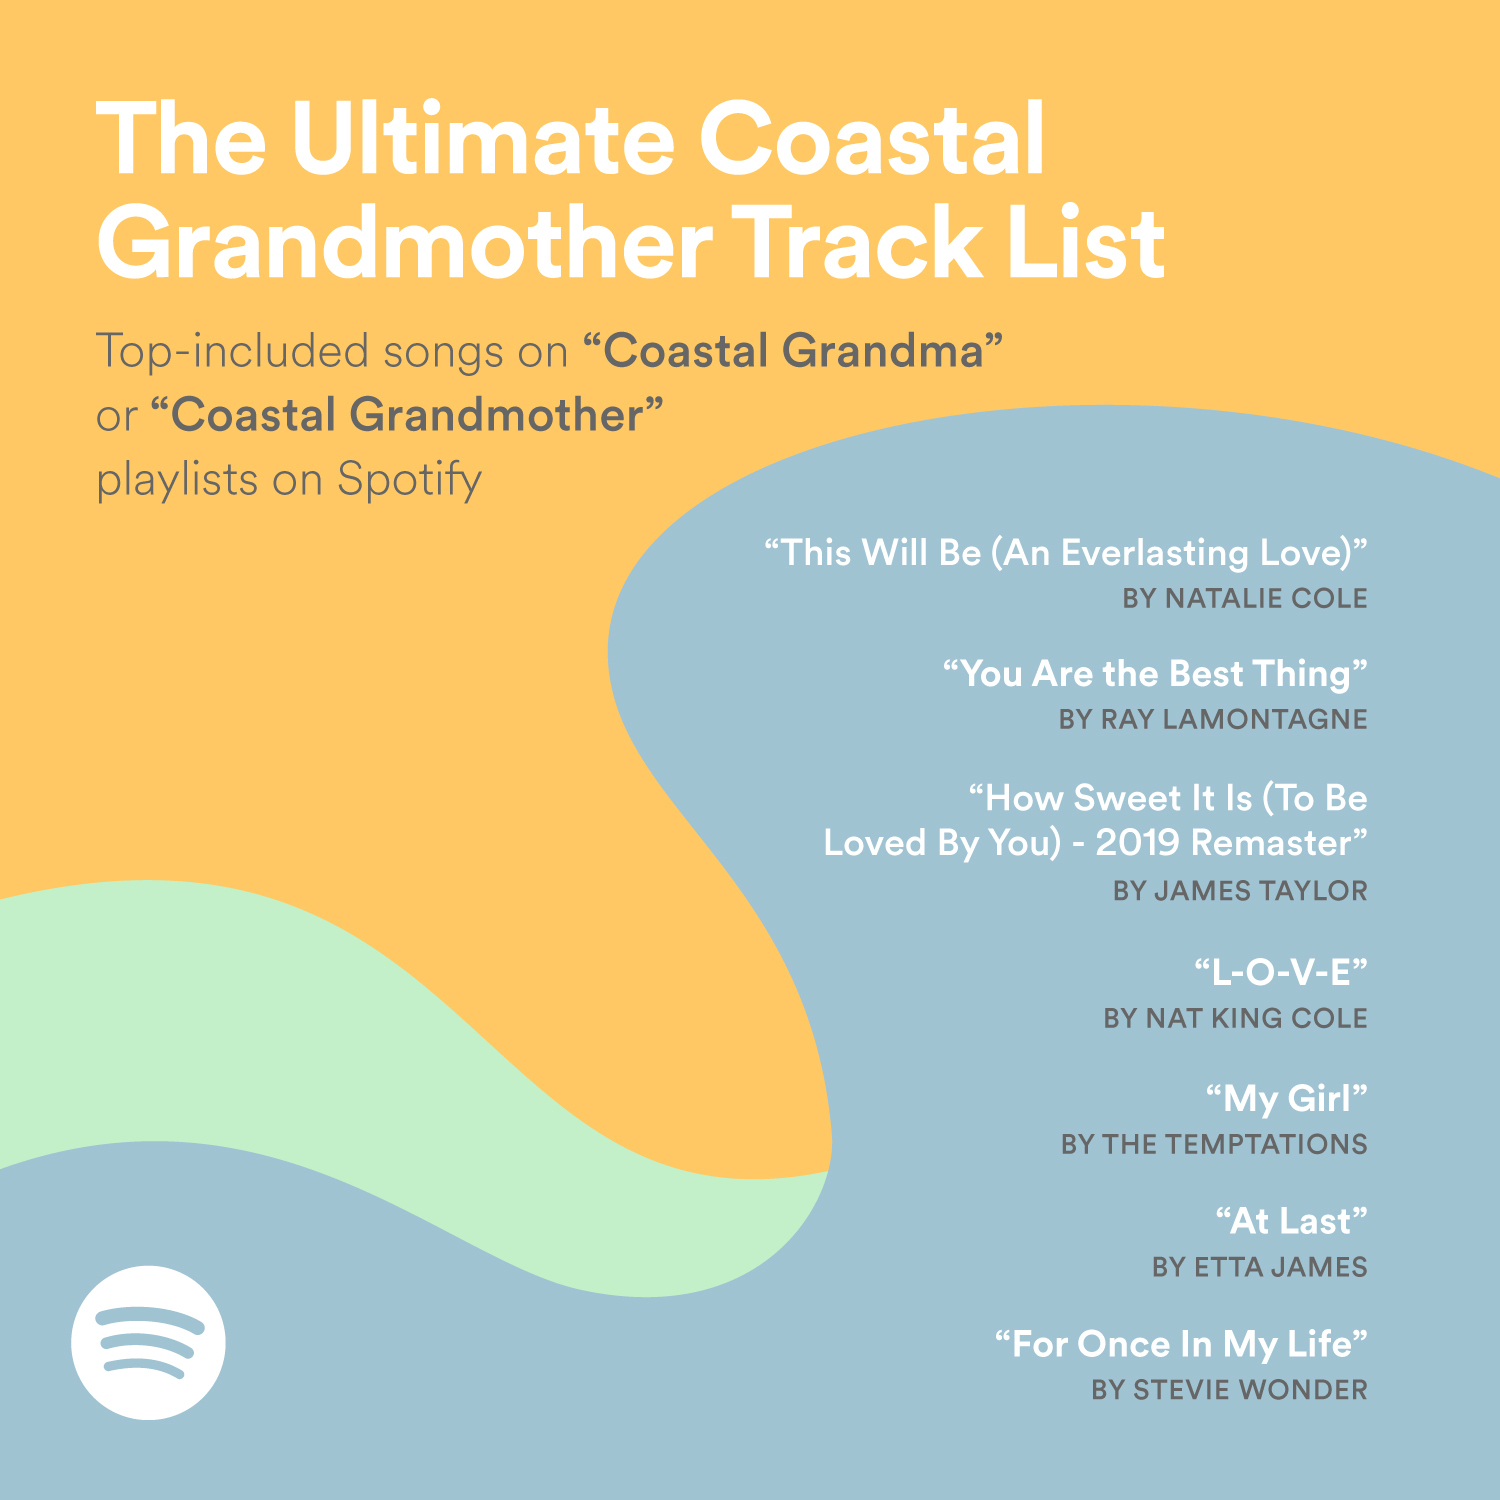 The Ultimate Coastal Grandmother Track List